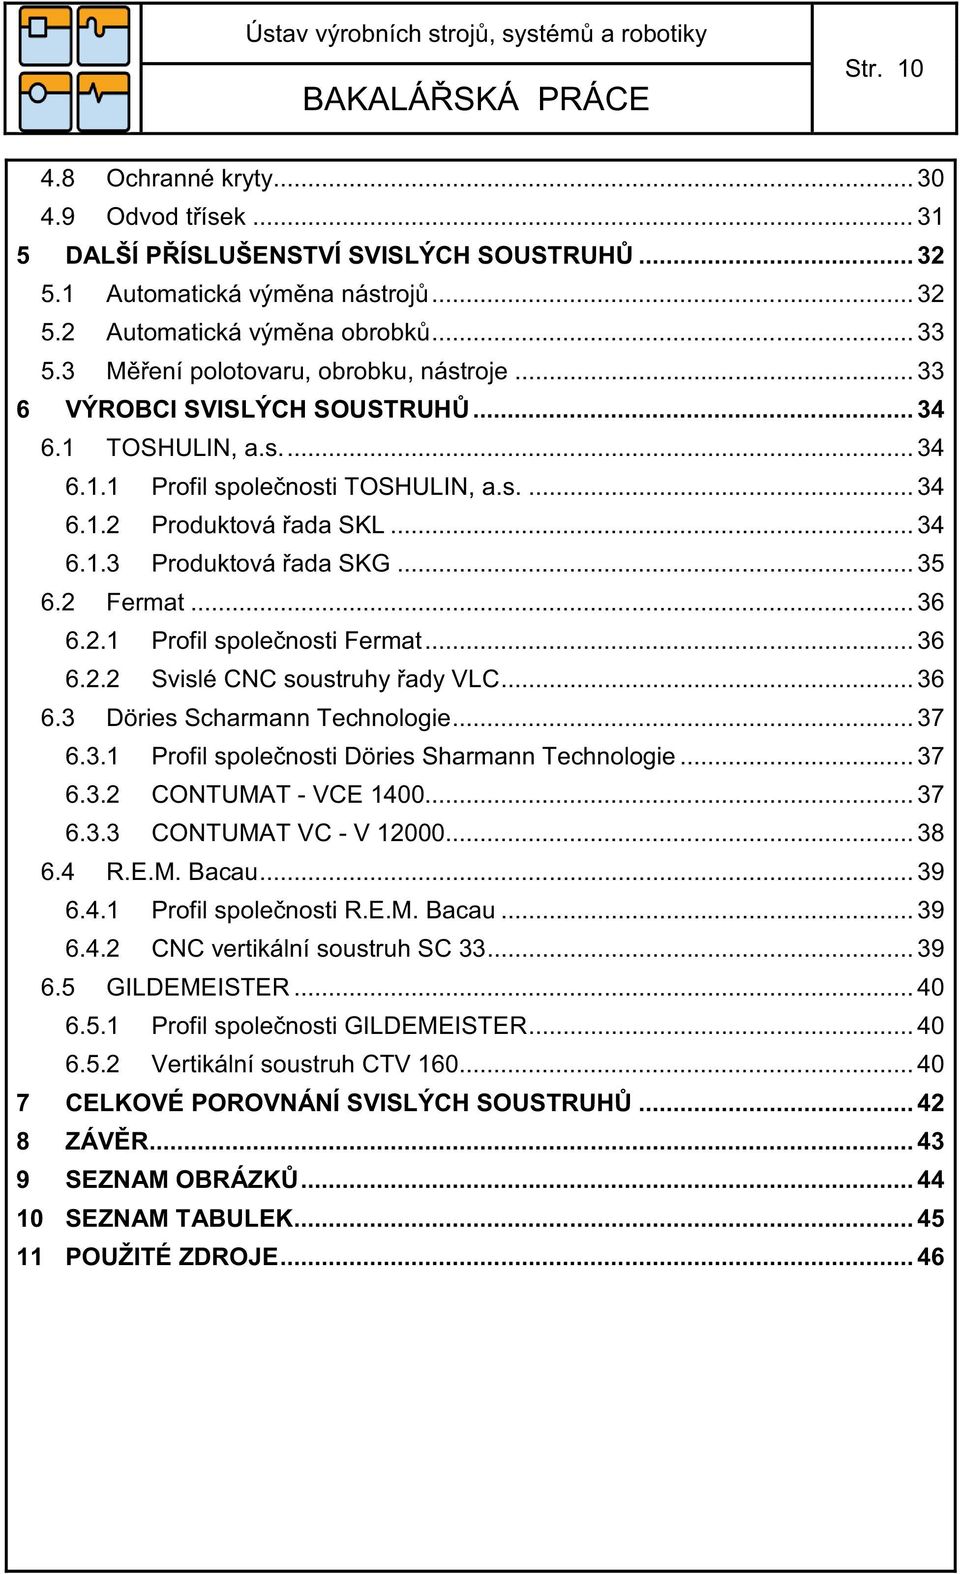 .. 35 6.2 Fermat... 36 6.2.1 Profil společnosti Fermat... 36 6.2.2 Svislé CNC soustruhy řady VLC... 36 6.3 Döries Scharmann Technologie... 37 6.3.1 Profil společnosti Döries Sharmann Technologie.